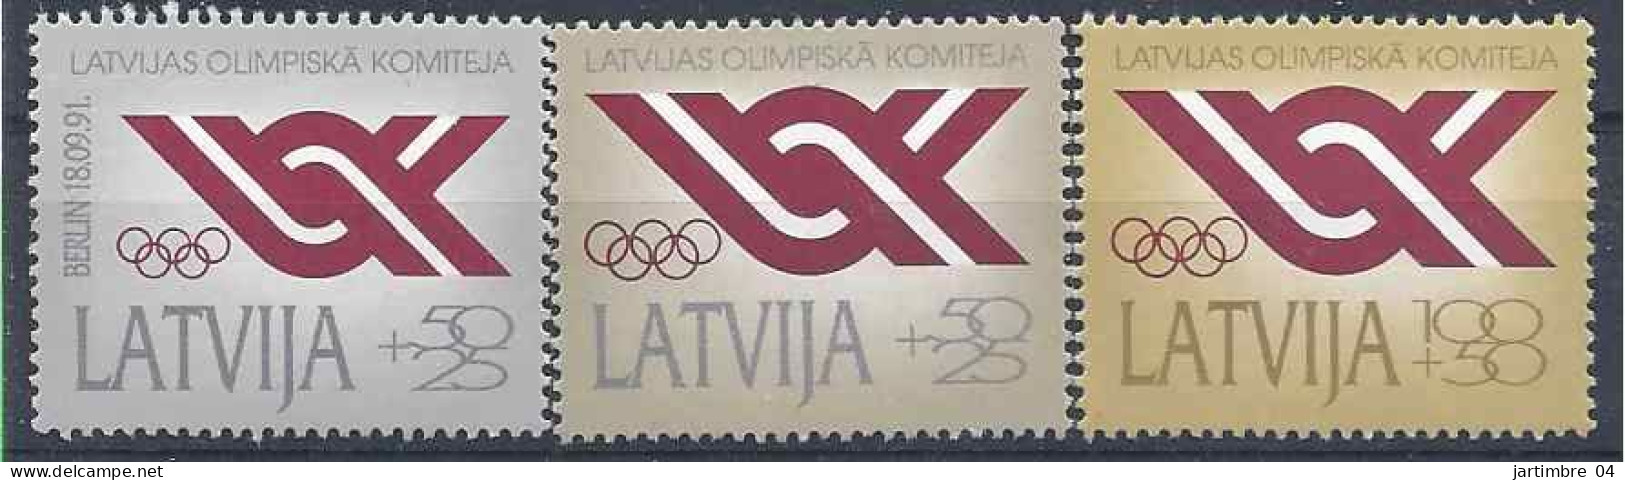 1991 LETTONIE 283-85** Comité Olympique - Lettonie